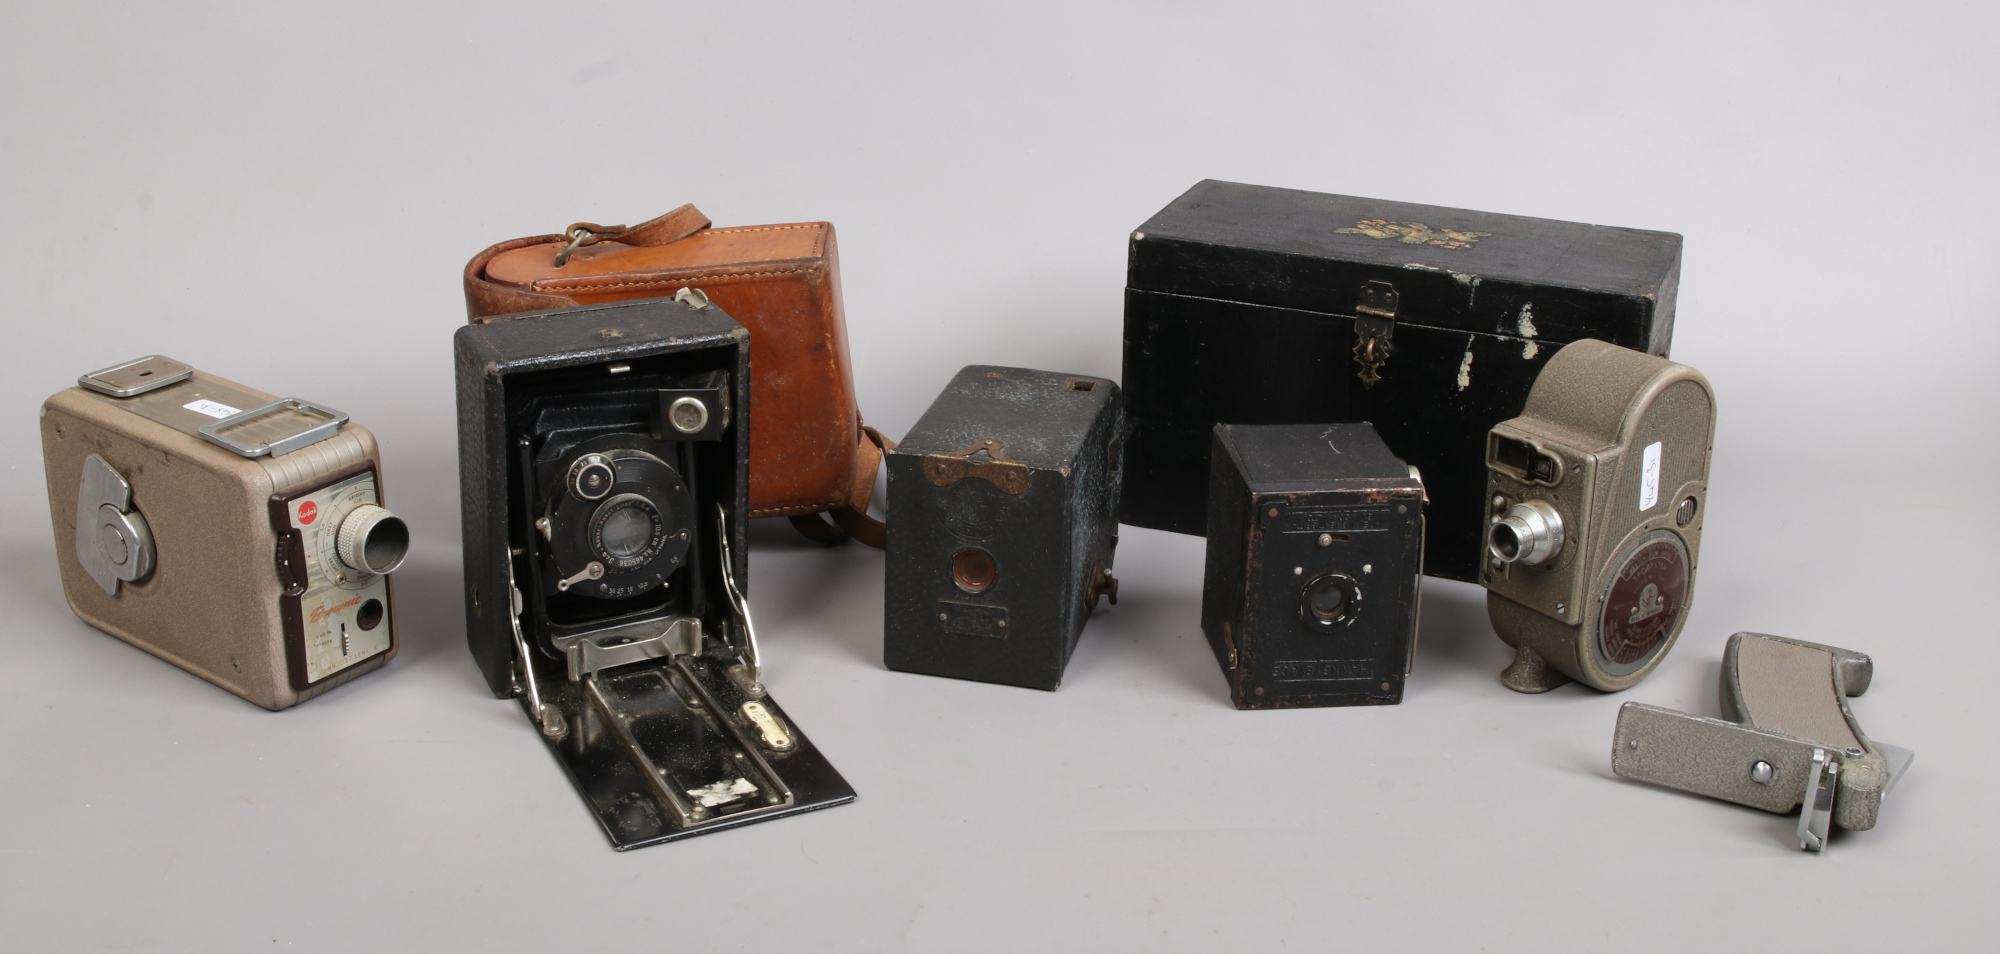 A Bell & Howell Sportstar Cine camera, Kodak Brownie Cine camera, two box cameras and a JCA German